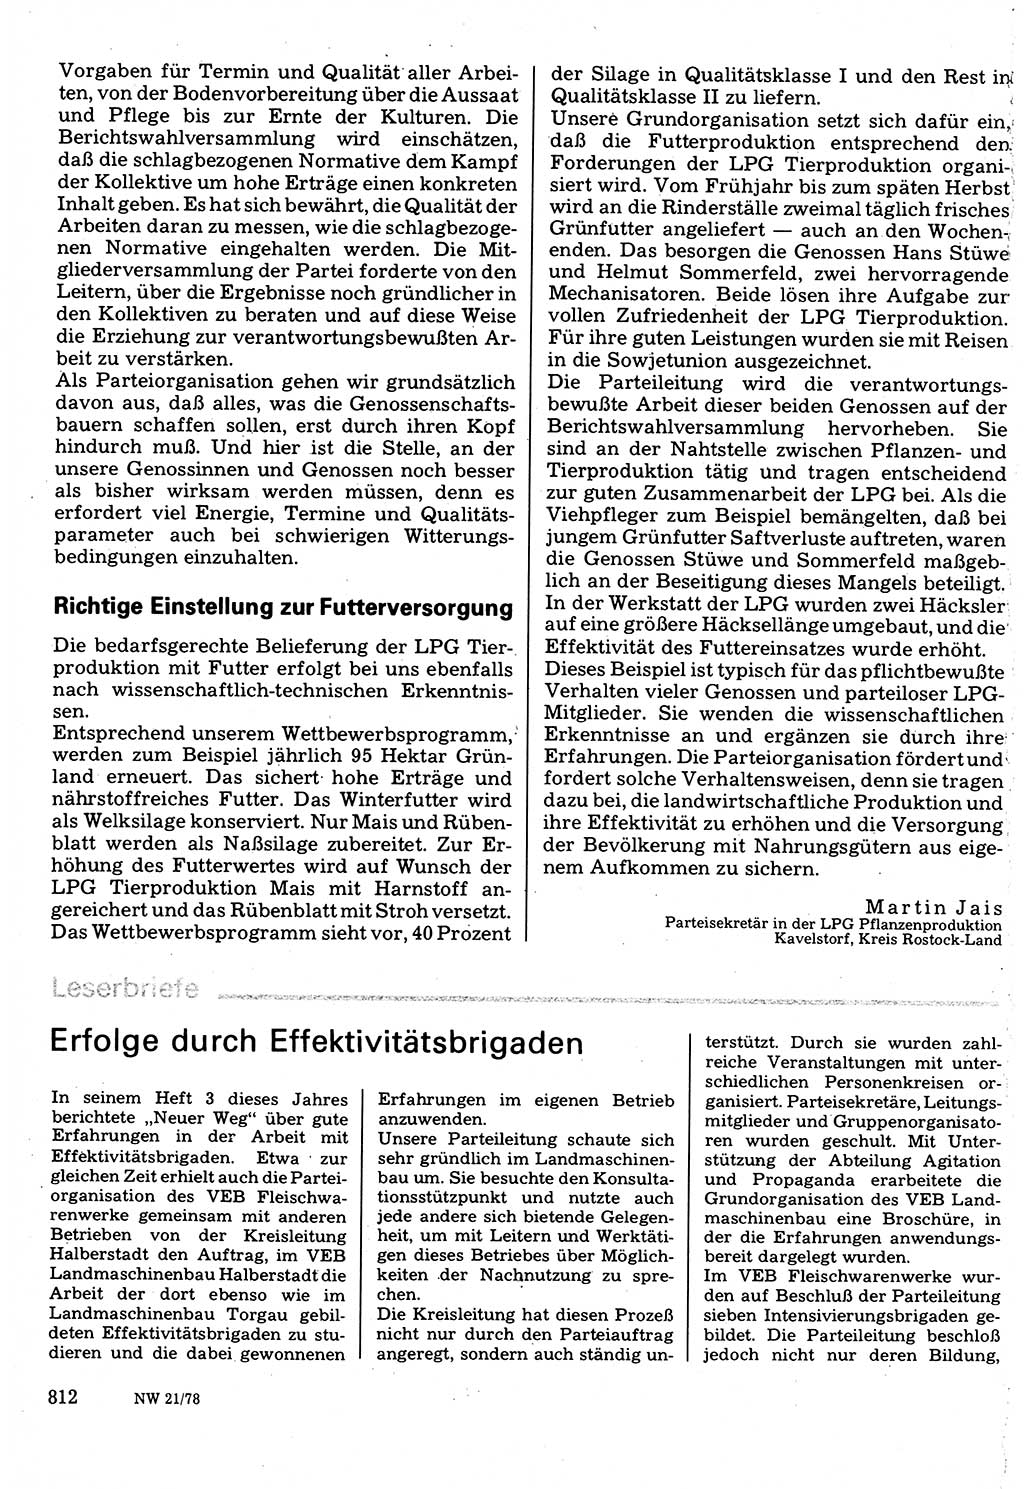 Neuer Weg (NW), Organ des Zentralkomitees (ZK) der SED (Sozialistische Einheitspartei Deutschlands) für Fragen des Parteilebens, 33. Jahrgang [Deutsche Demokratische Republik (DDR)] 1978, Seite 812 (NW ZK SED DDR 1978, S. 812)